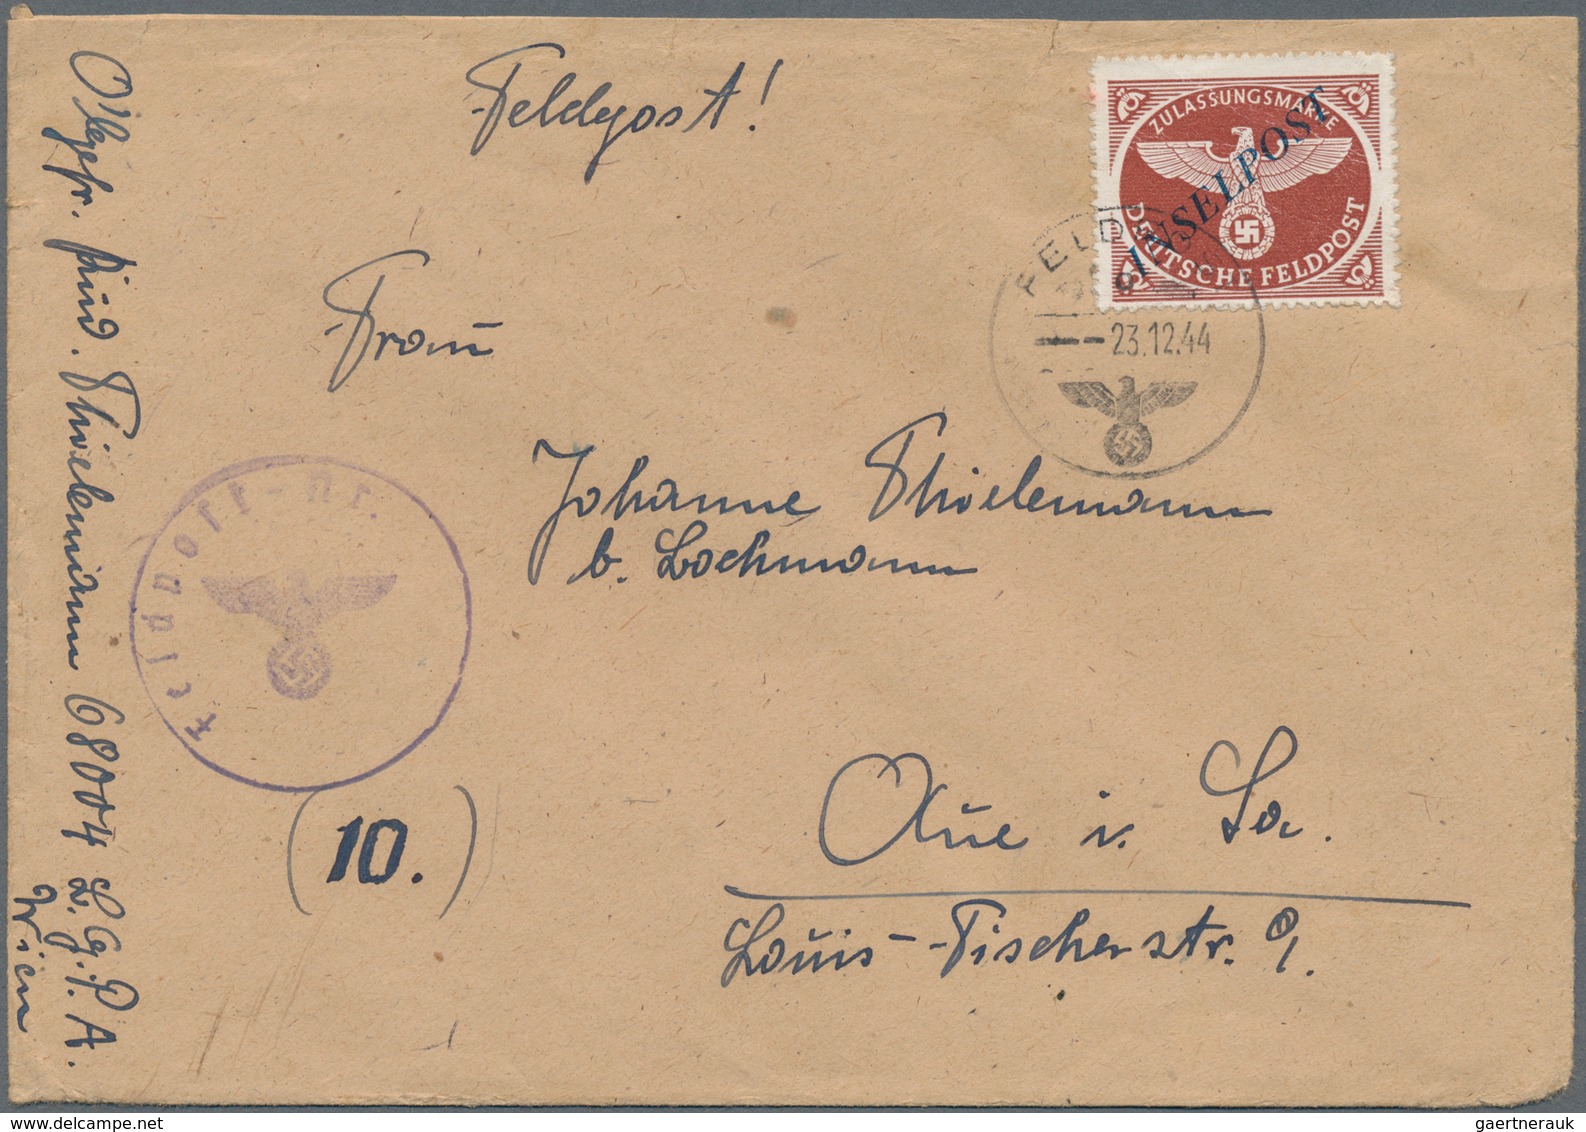 Deutsche Besetzung II. WK: 1939/1945, interessante Sammlung mit ca.130 Belegen im Ringbinder, dabei